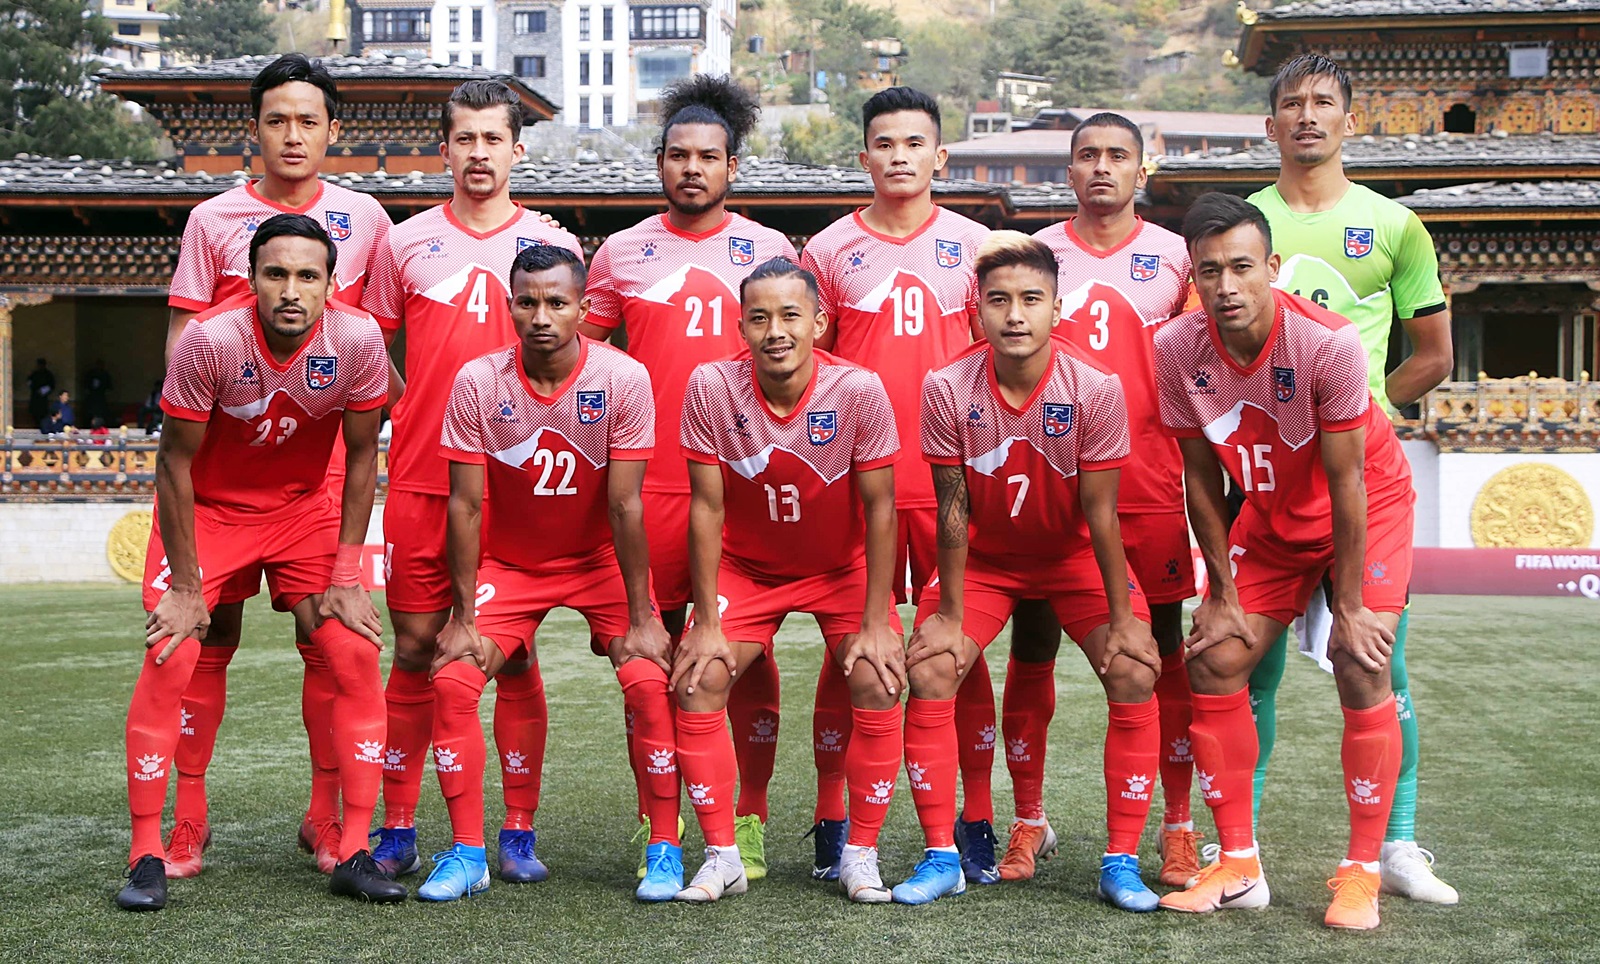 नेपाली फुटबल टोली आज स्वदेश फर्कदै